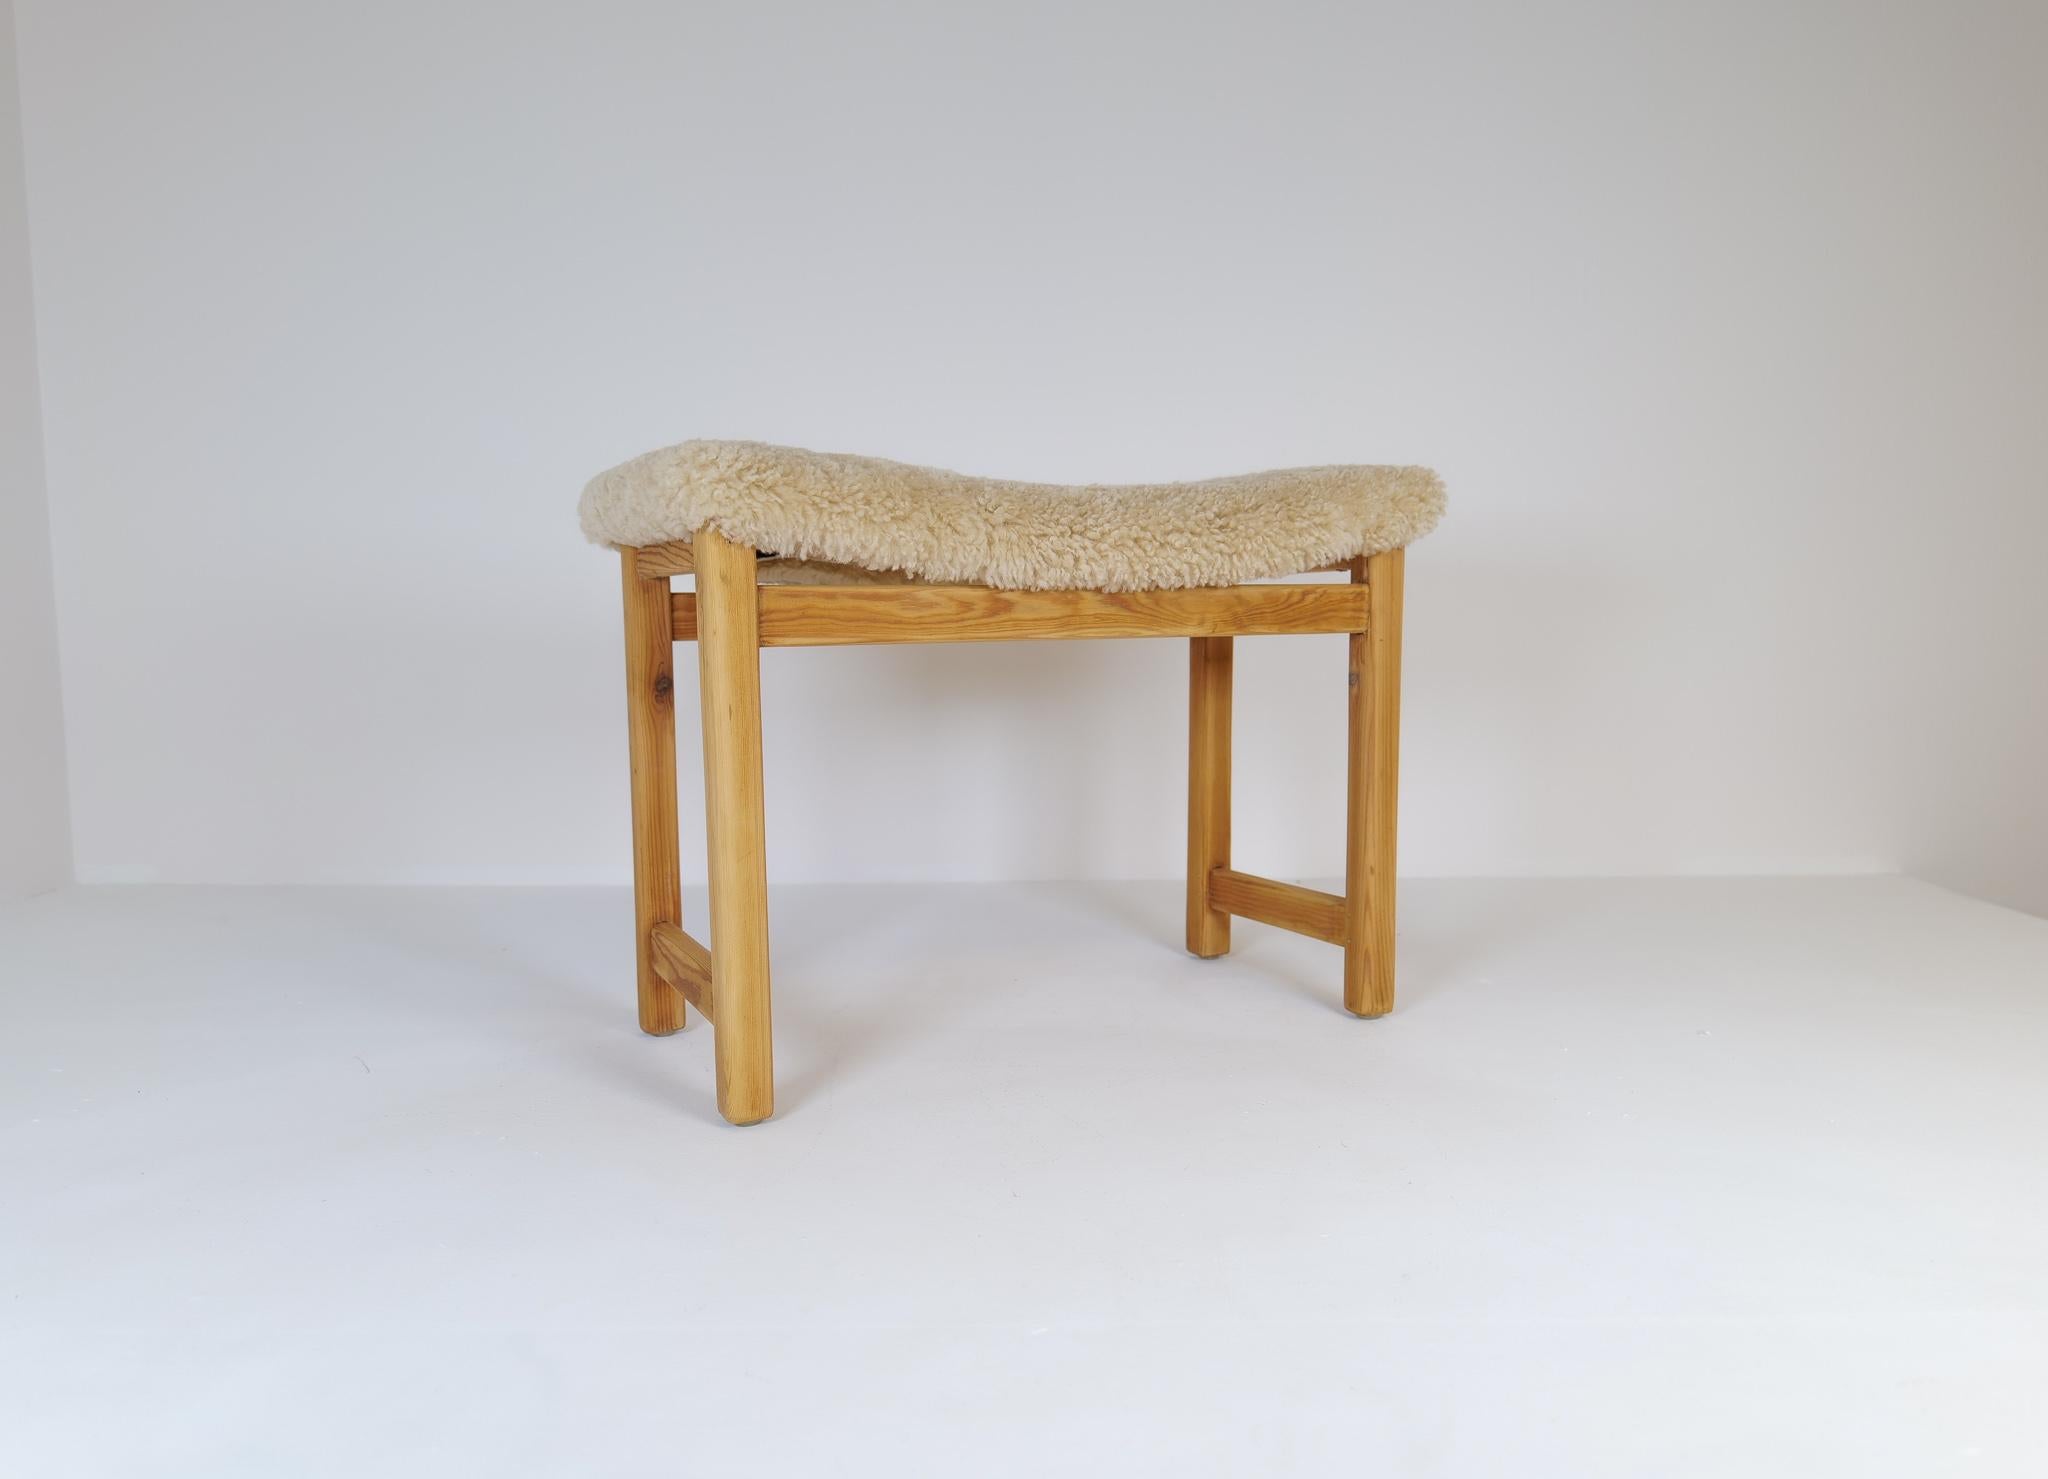 Ein Hocker aus Kiefer mit neuer Polsterung aus Schafsleder. Natürlicher und typischer Stuhl, hergestellt in Schweden in den 1960-1970er Jahren
Dieser Hocker ist ein gutes Beispiel für die gute Handwerkskunst und den minimalistischen Stil